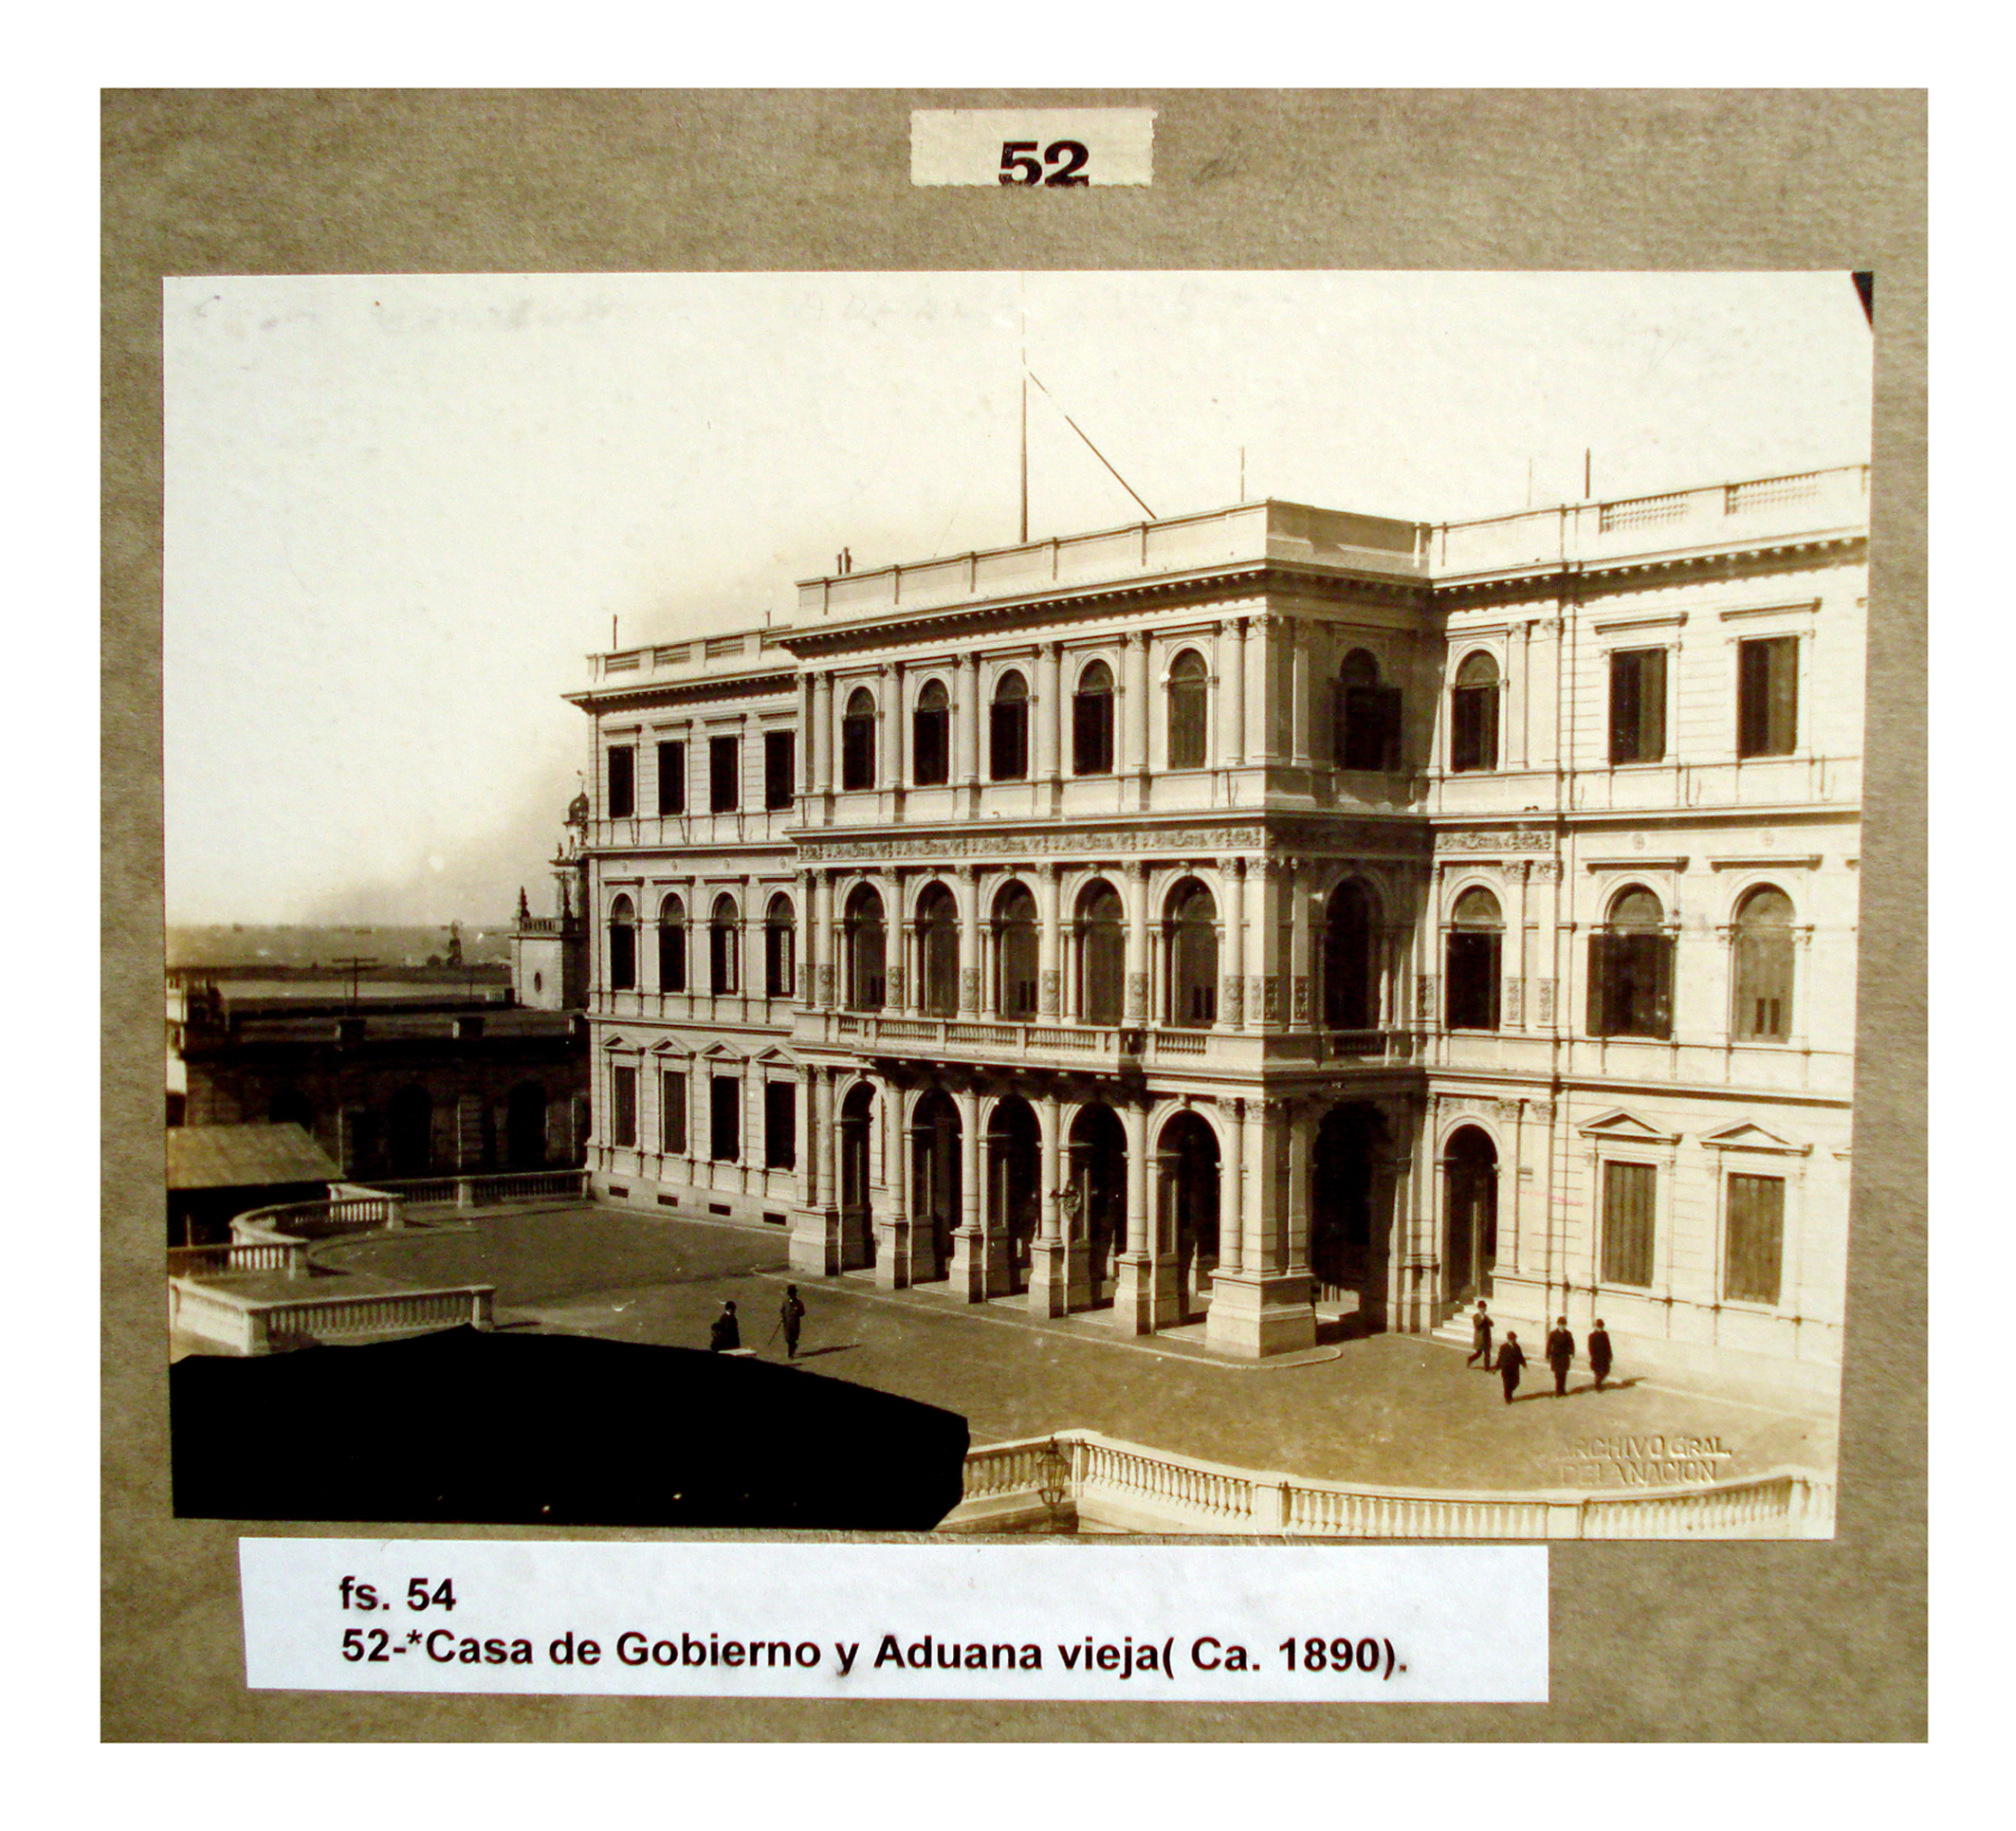 Casa de Gobierno y Aduana vieja